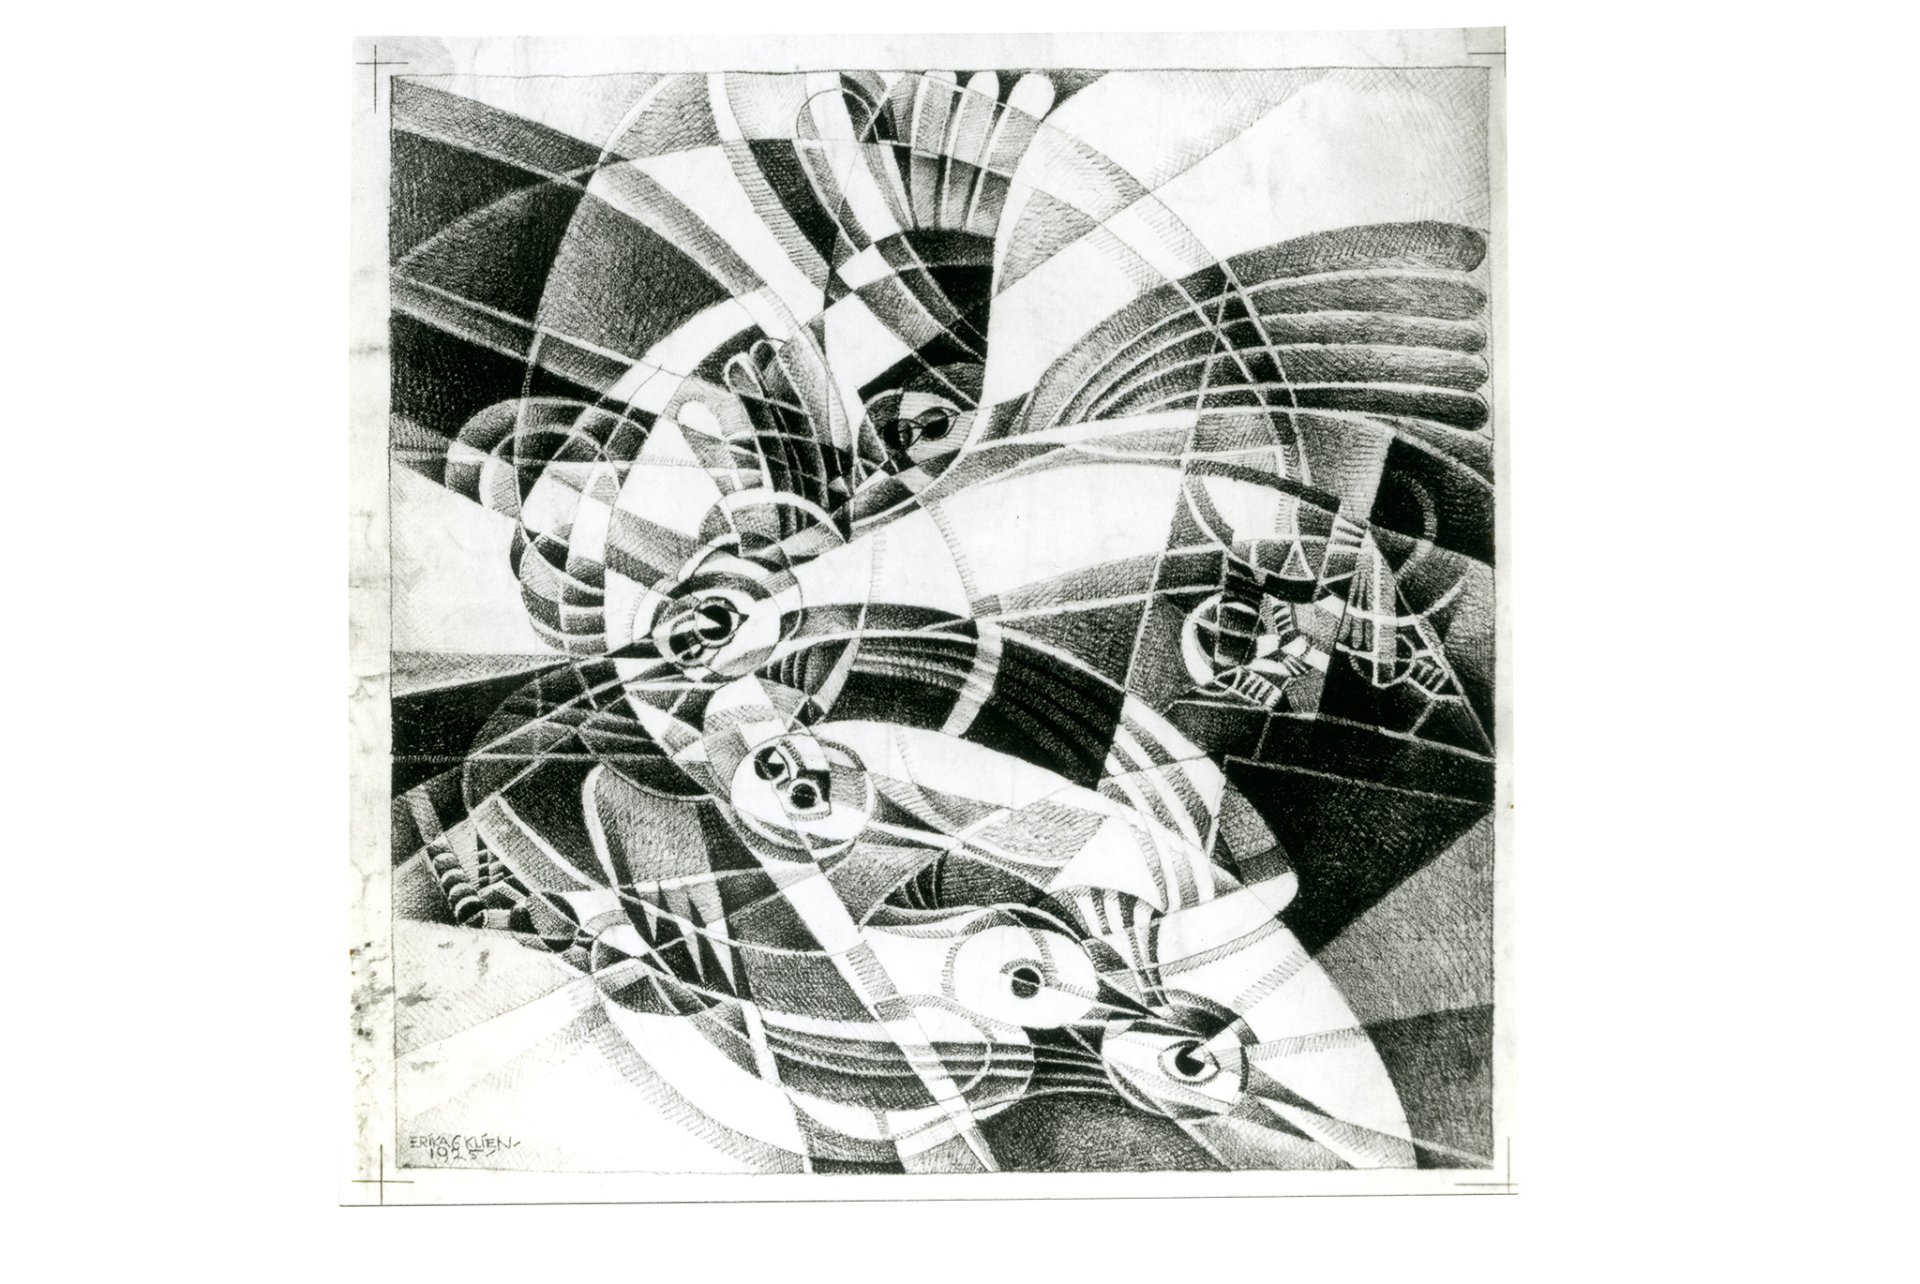 2. »Sturmvögel«, Erika Giovanna Klien, 1925 »Man kann sich der Dynamik dieser Arbeit der Mitbegründerin des Wiener Kinetismus kaum entziehen.«